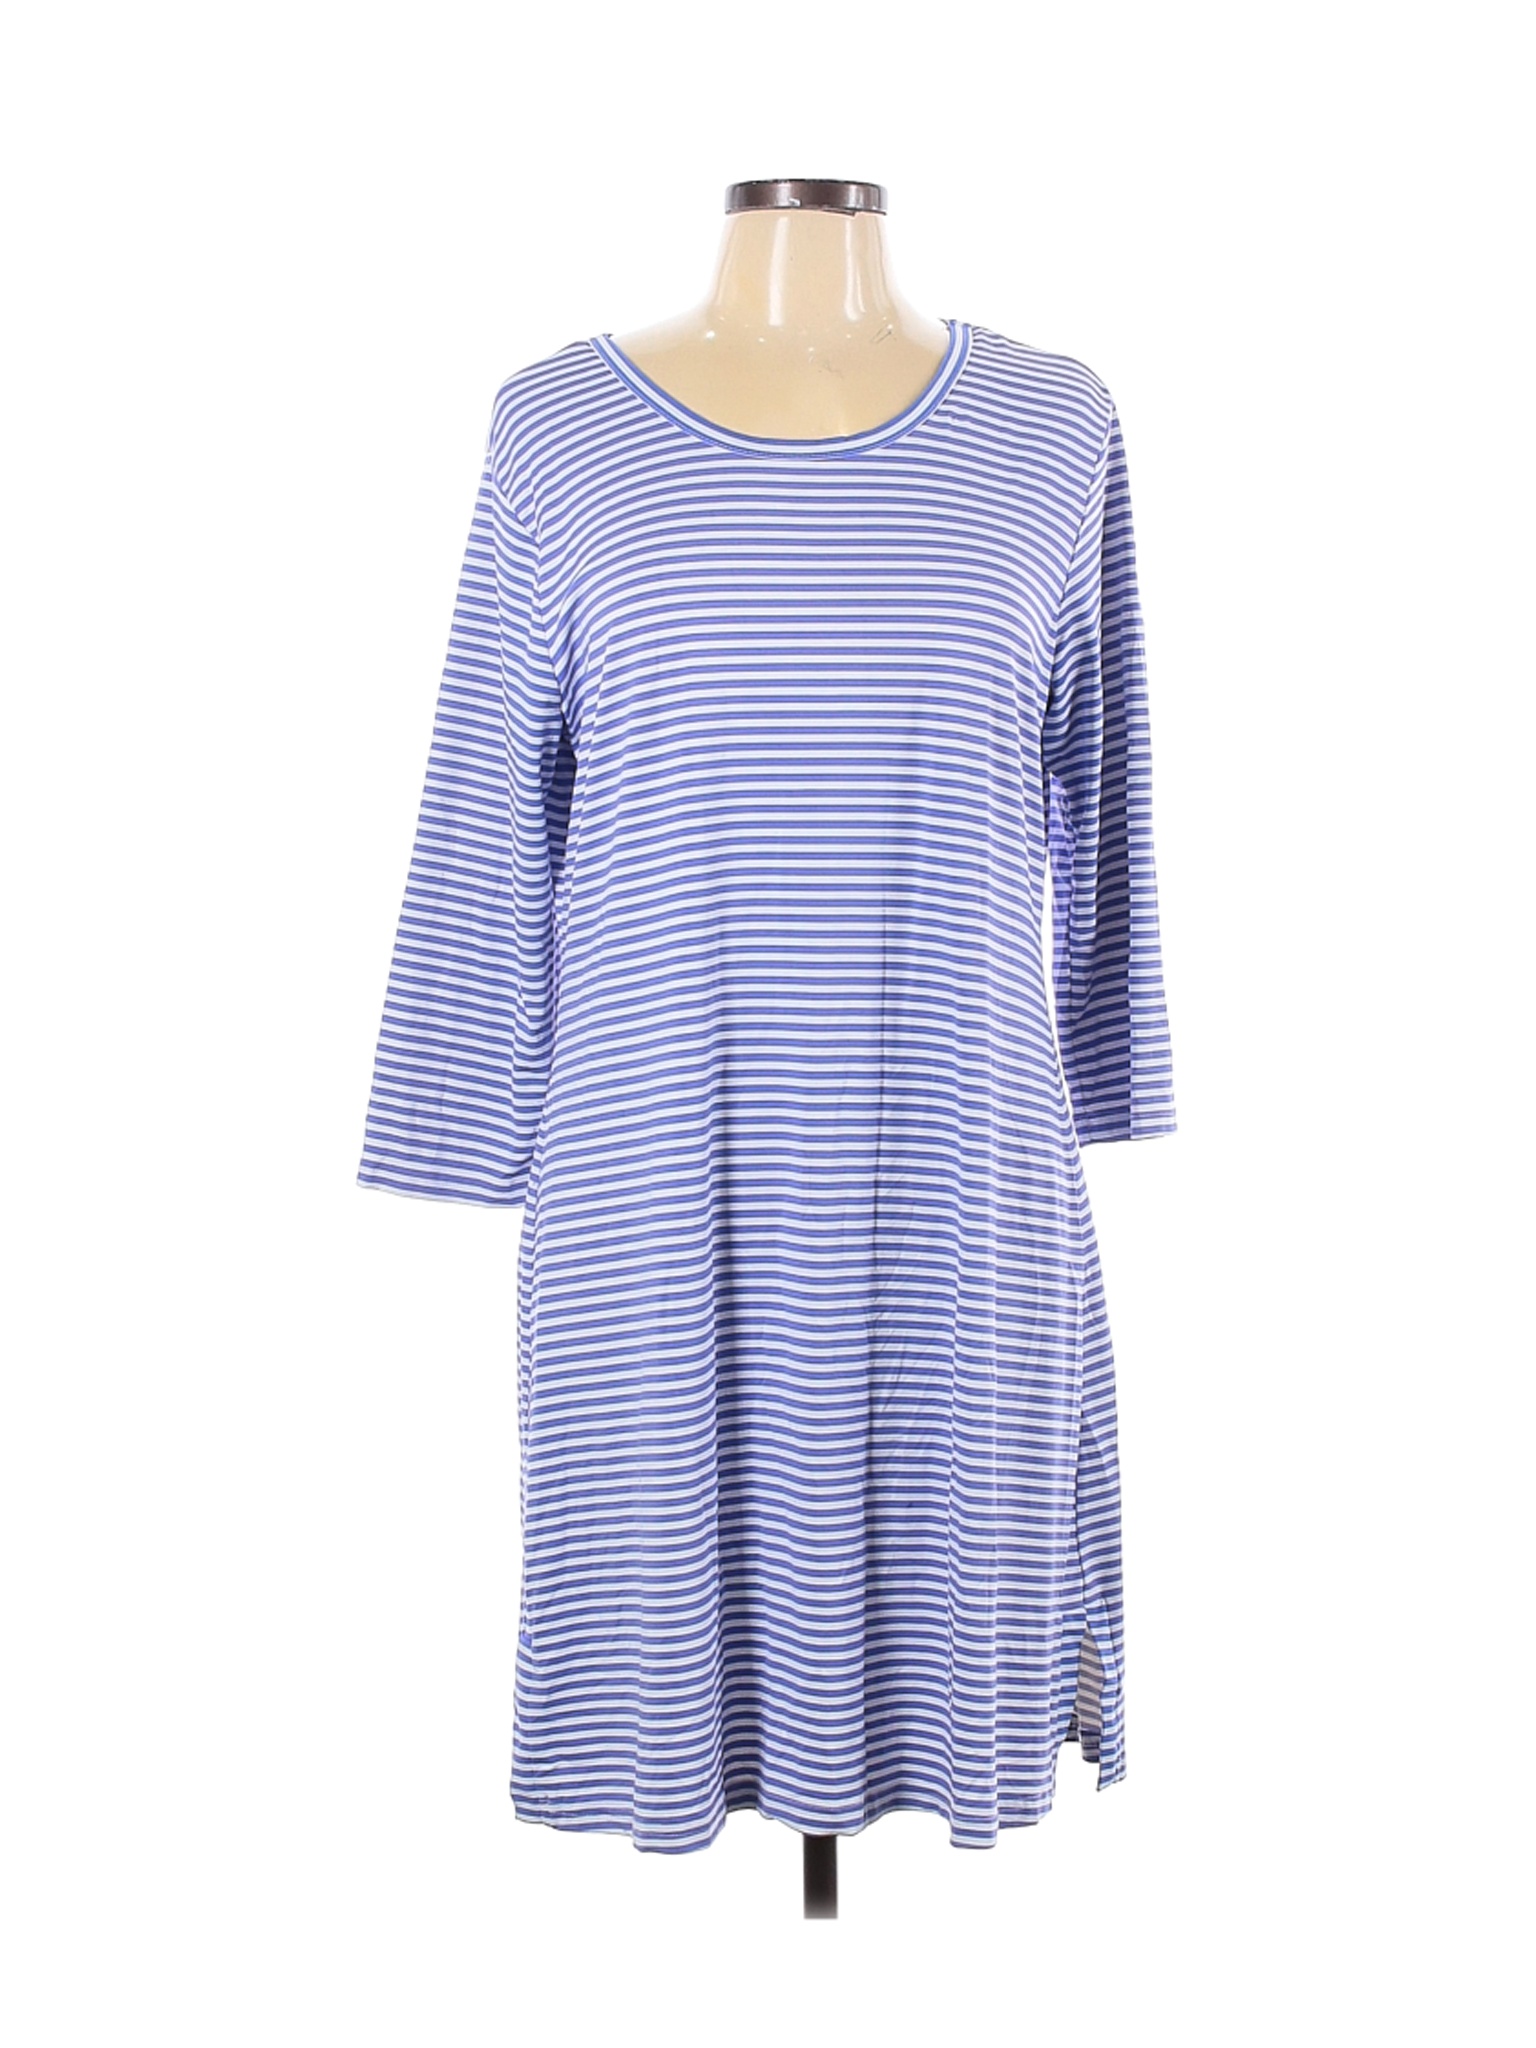 Lulu-B Women Blue Casual Dress L | eBay